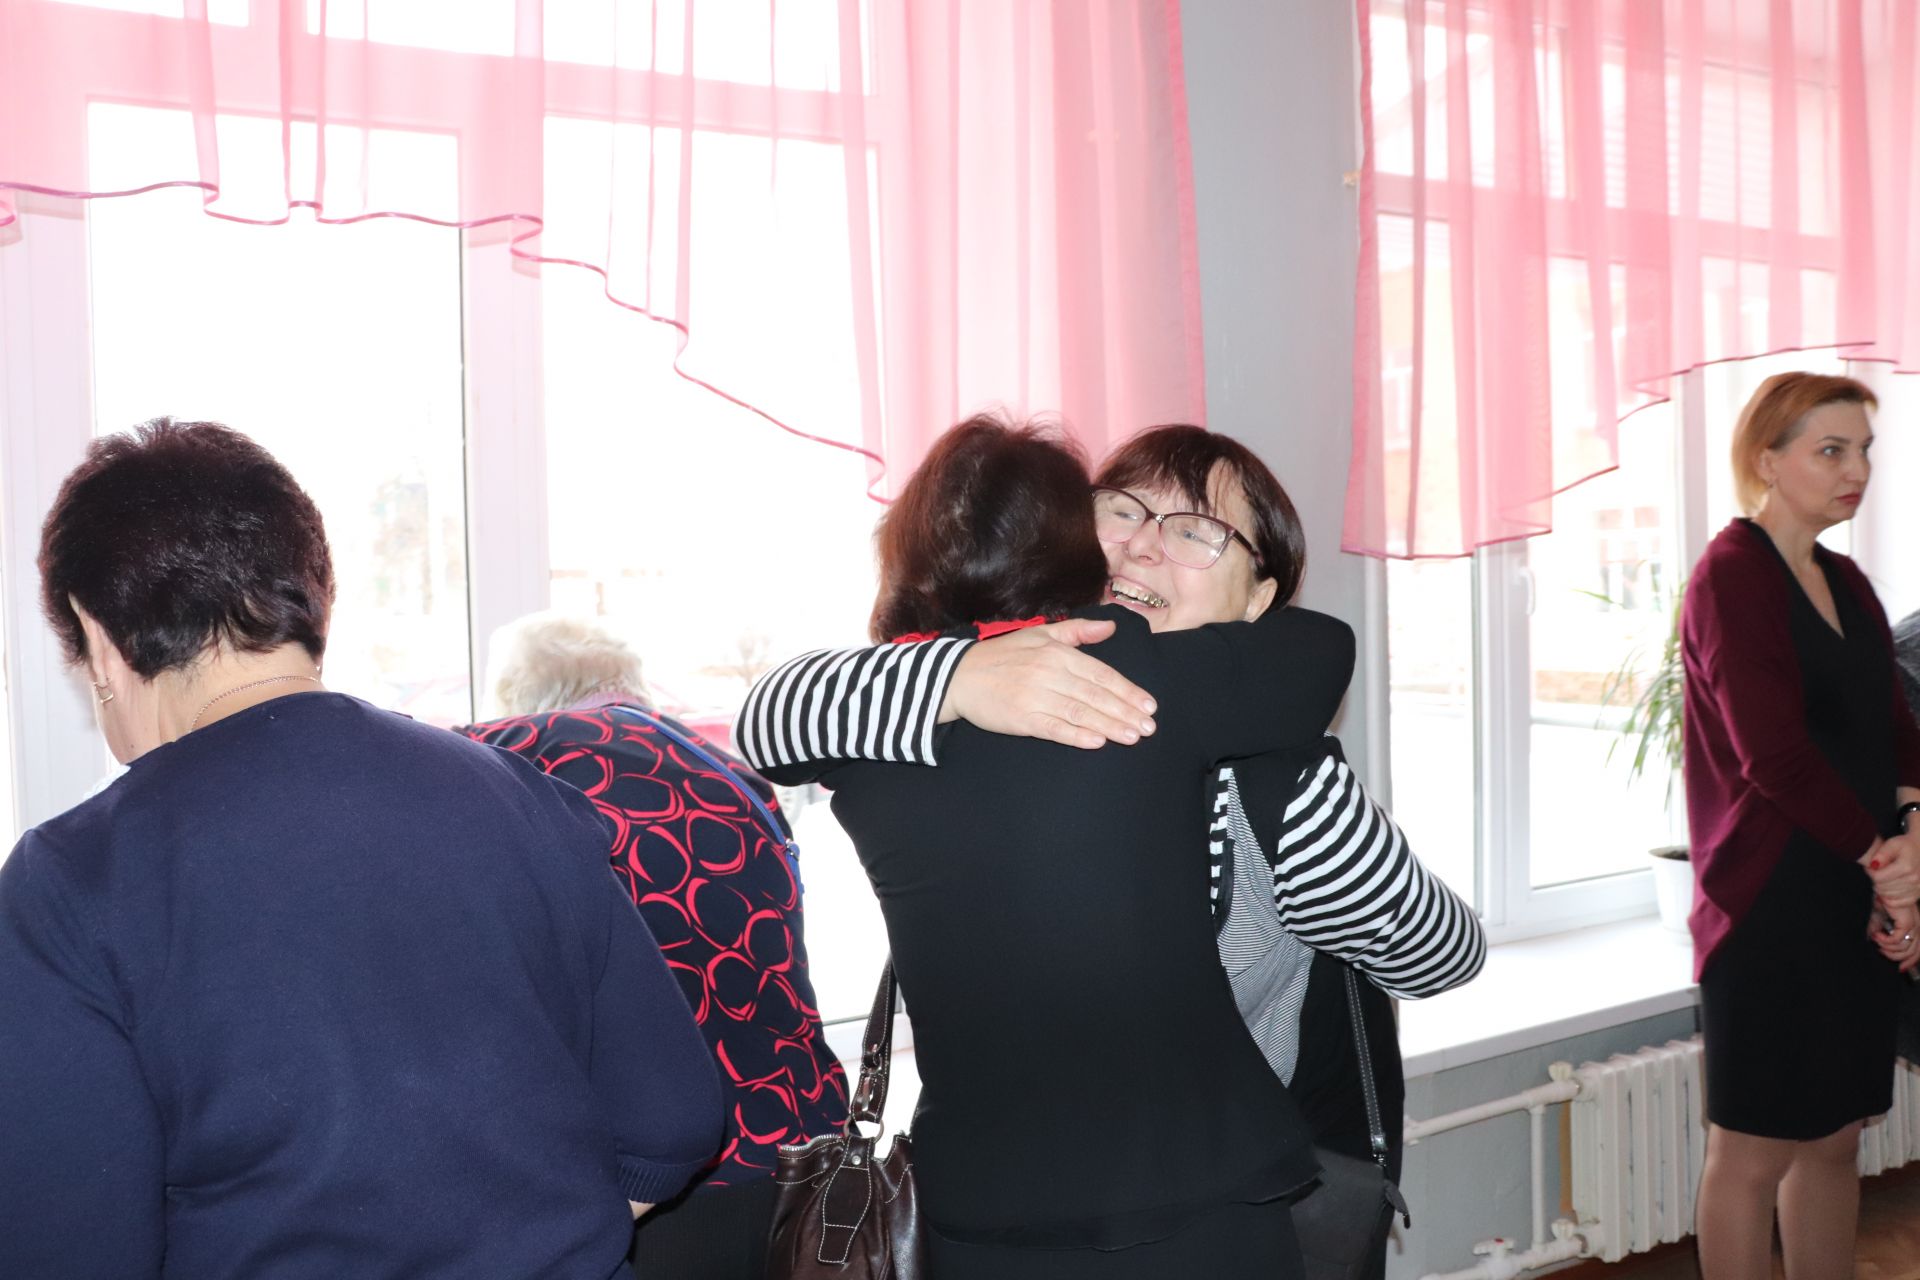 Школа №5 г.Азнакаево отметила золотой юбилей (ФОТО+ВИДЕО)